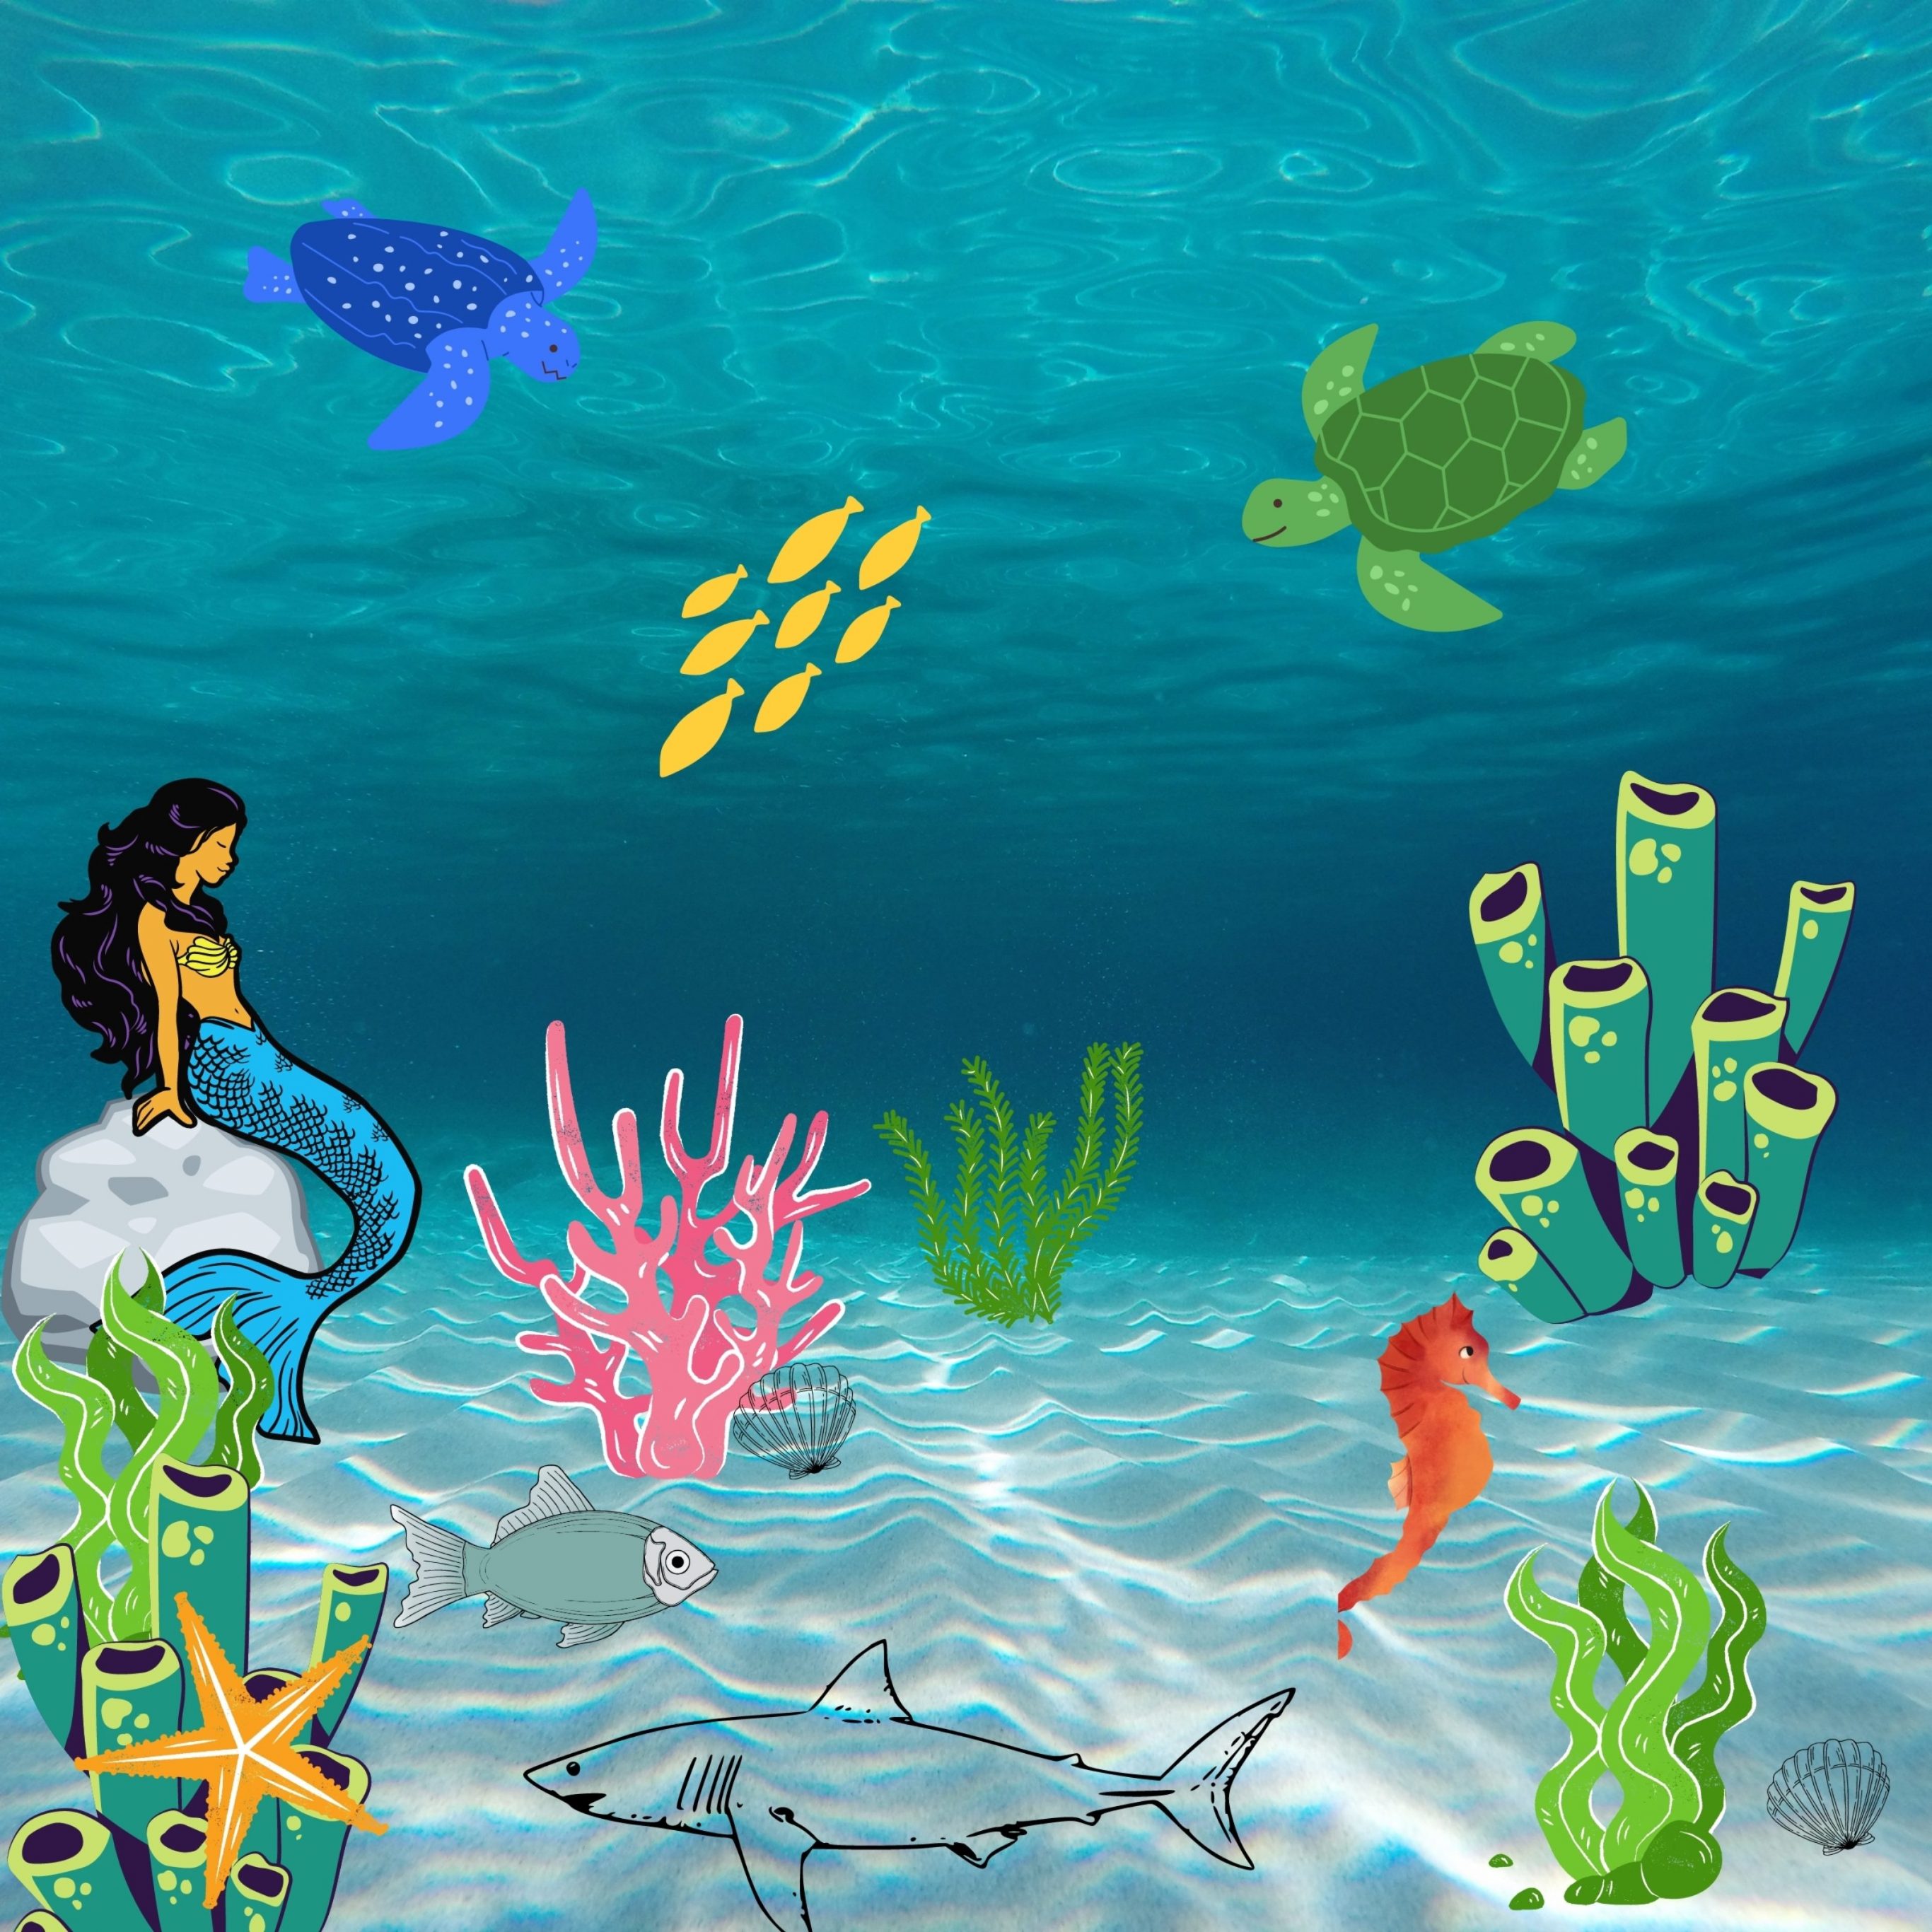 iPad Pro 12.9 wallpapers Underwater Creatures iPad Wallpaper